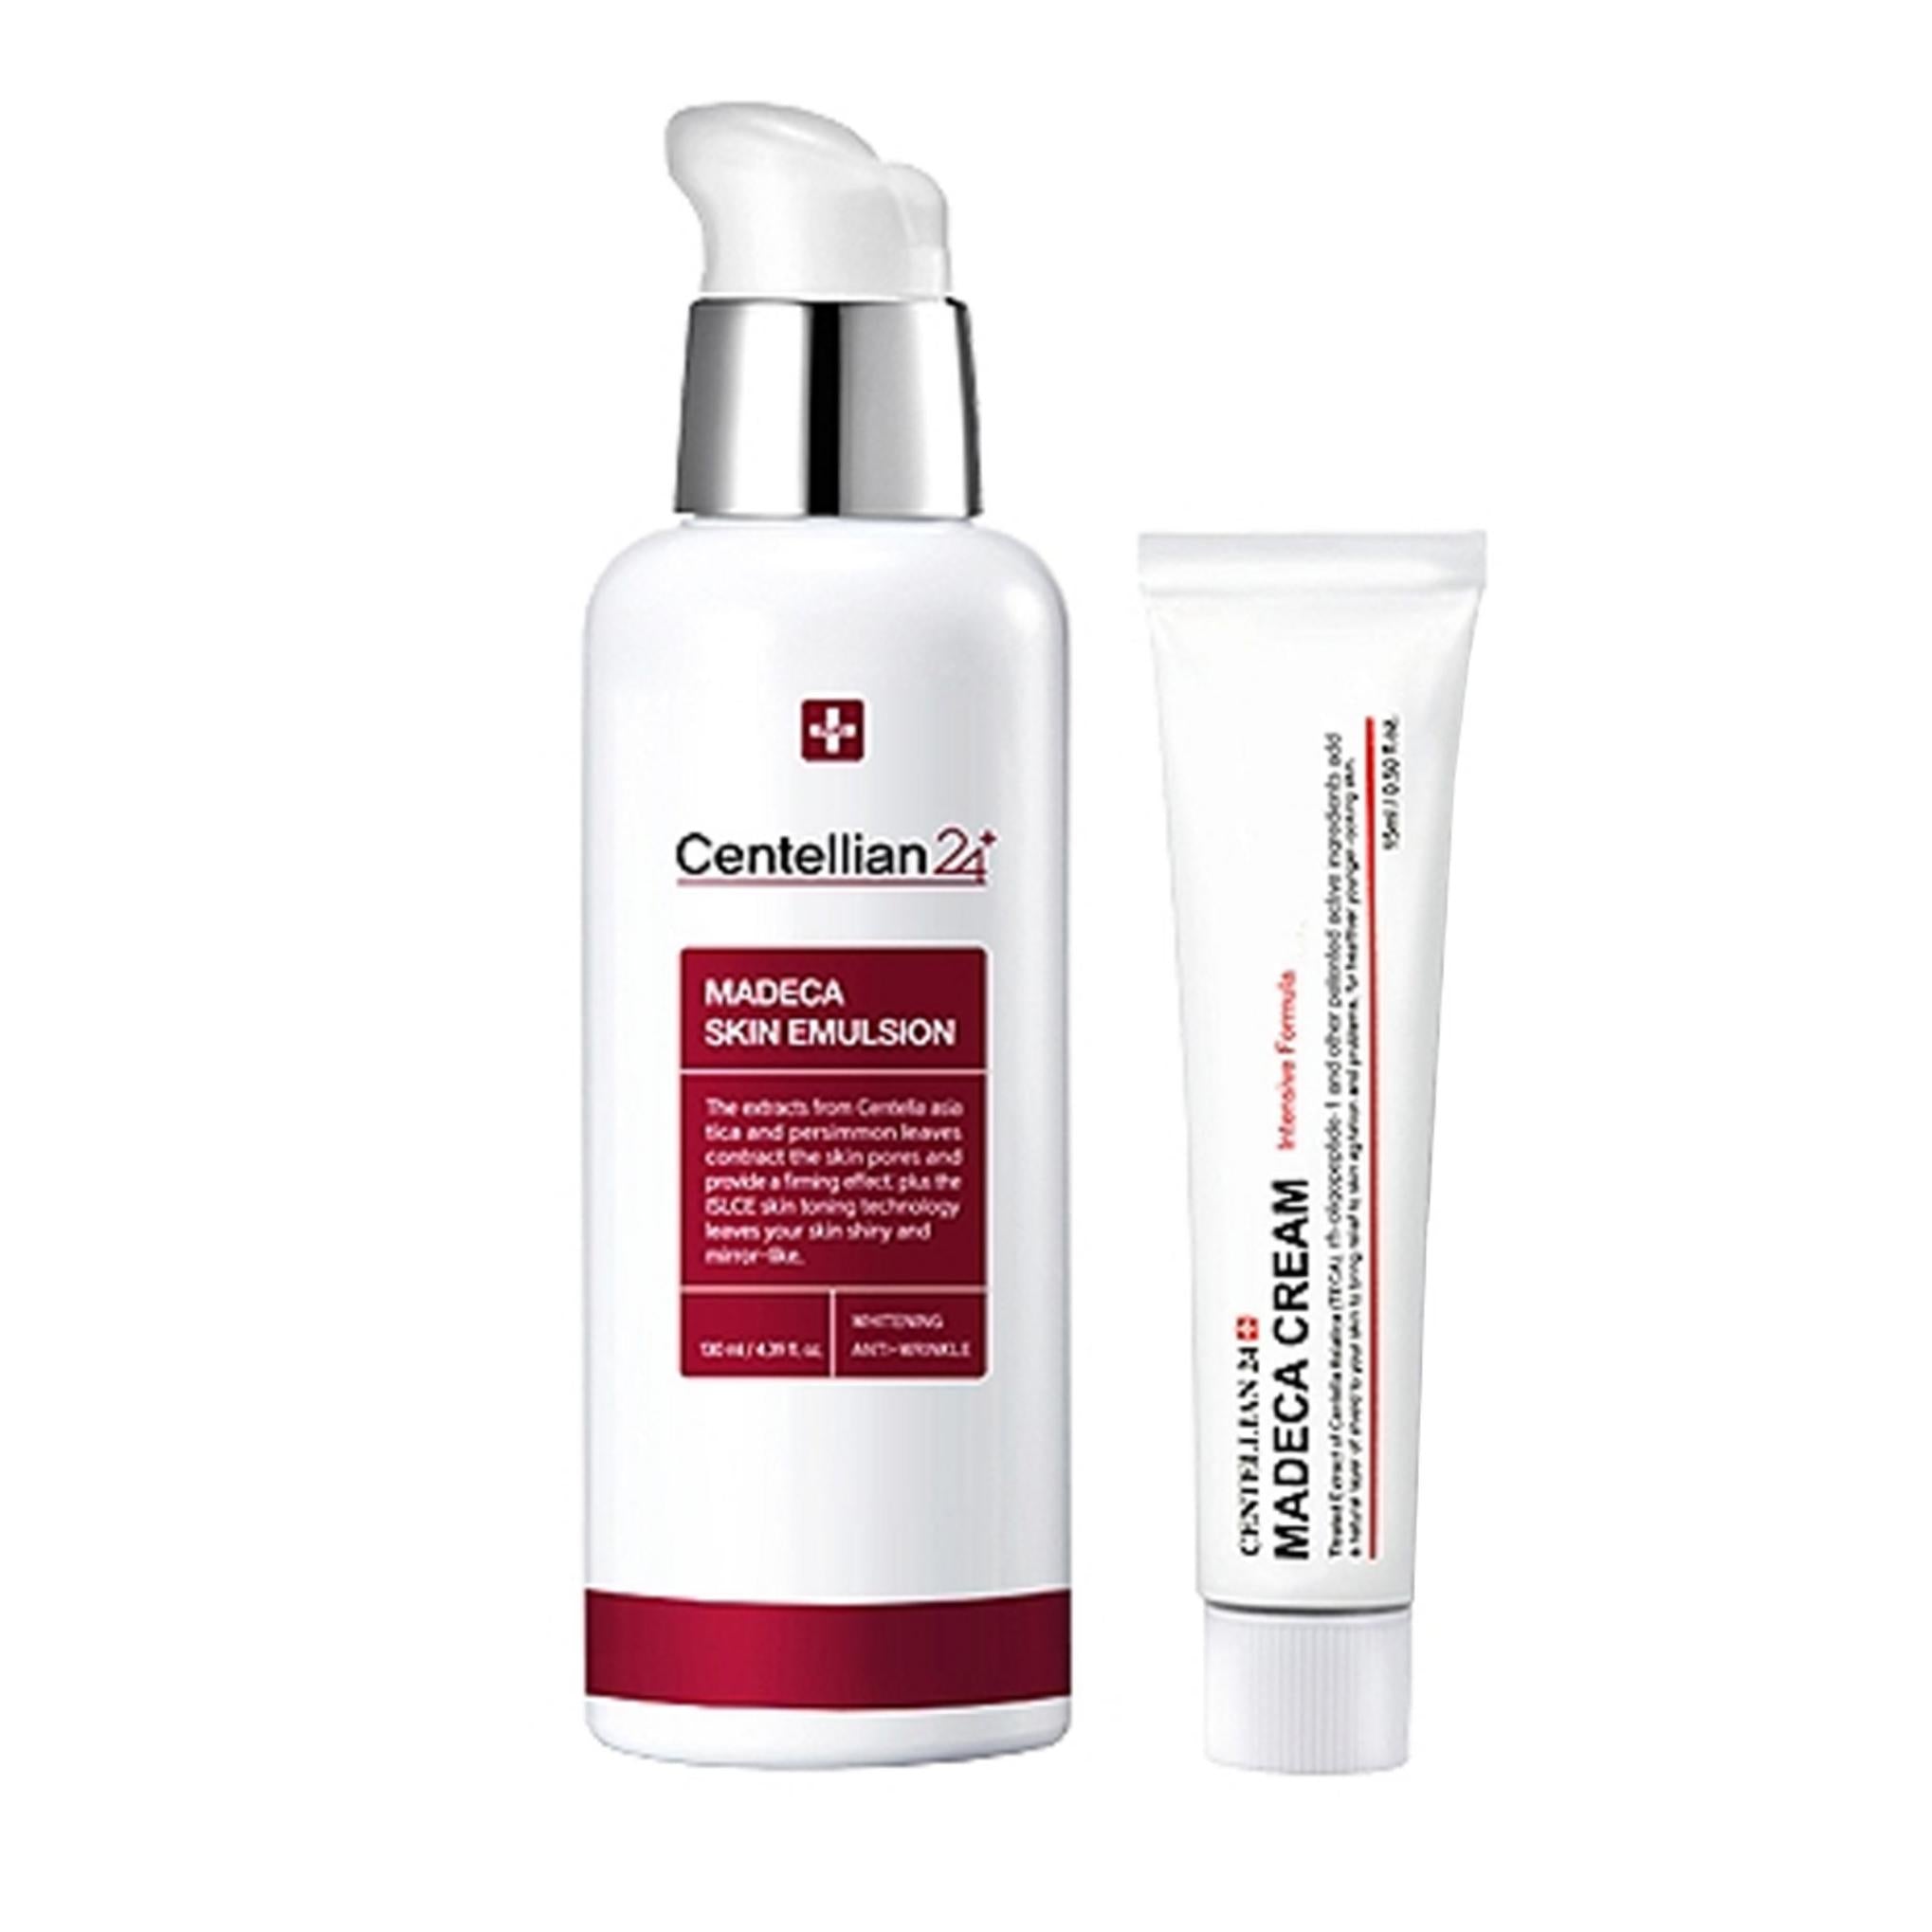 Centellian24 Madeca Skin Emulsion 130ml + Cream Intensive Formula 15ml